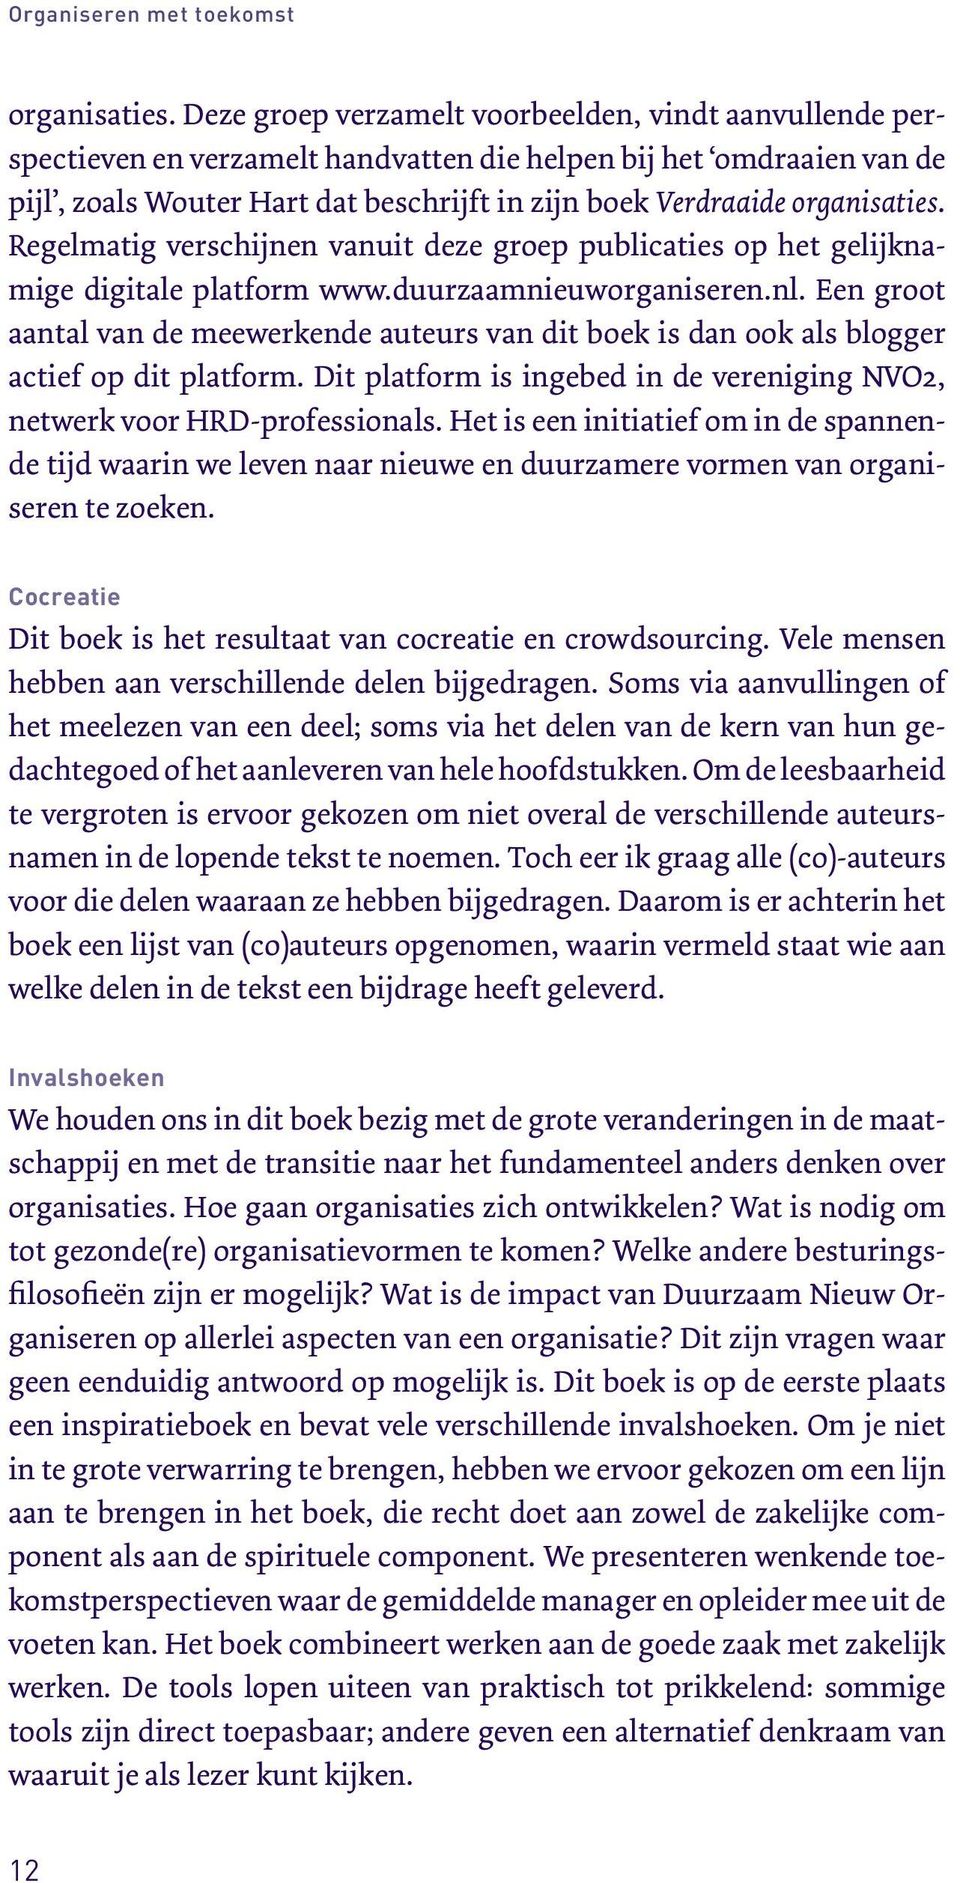 organisaties. Regelmatig verschijnen vanuit deze groep publicaties op het gelijknamige digitale platform www.duurzaamnieuworganiseren.nl.